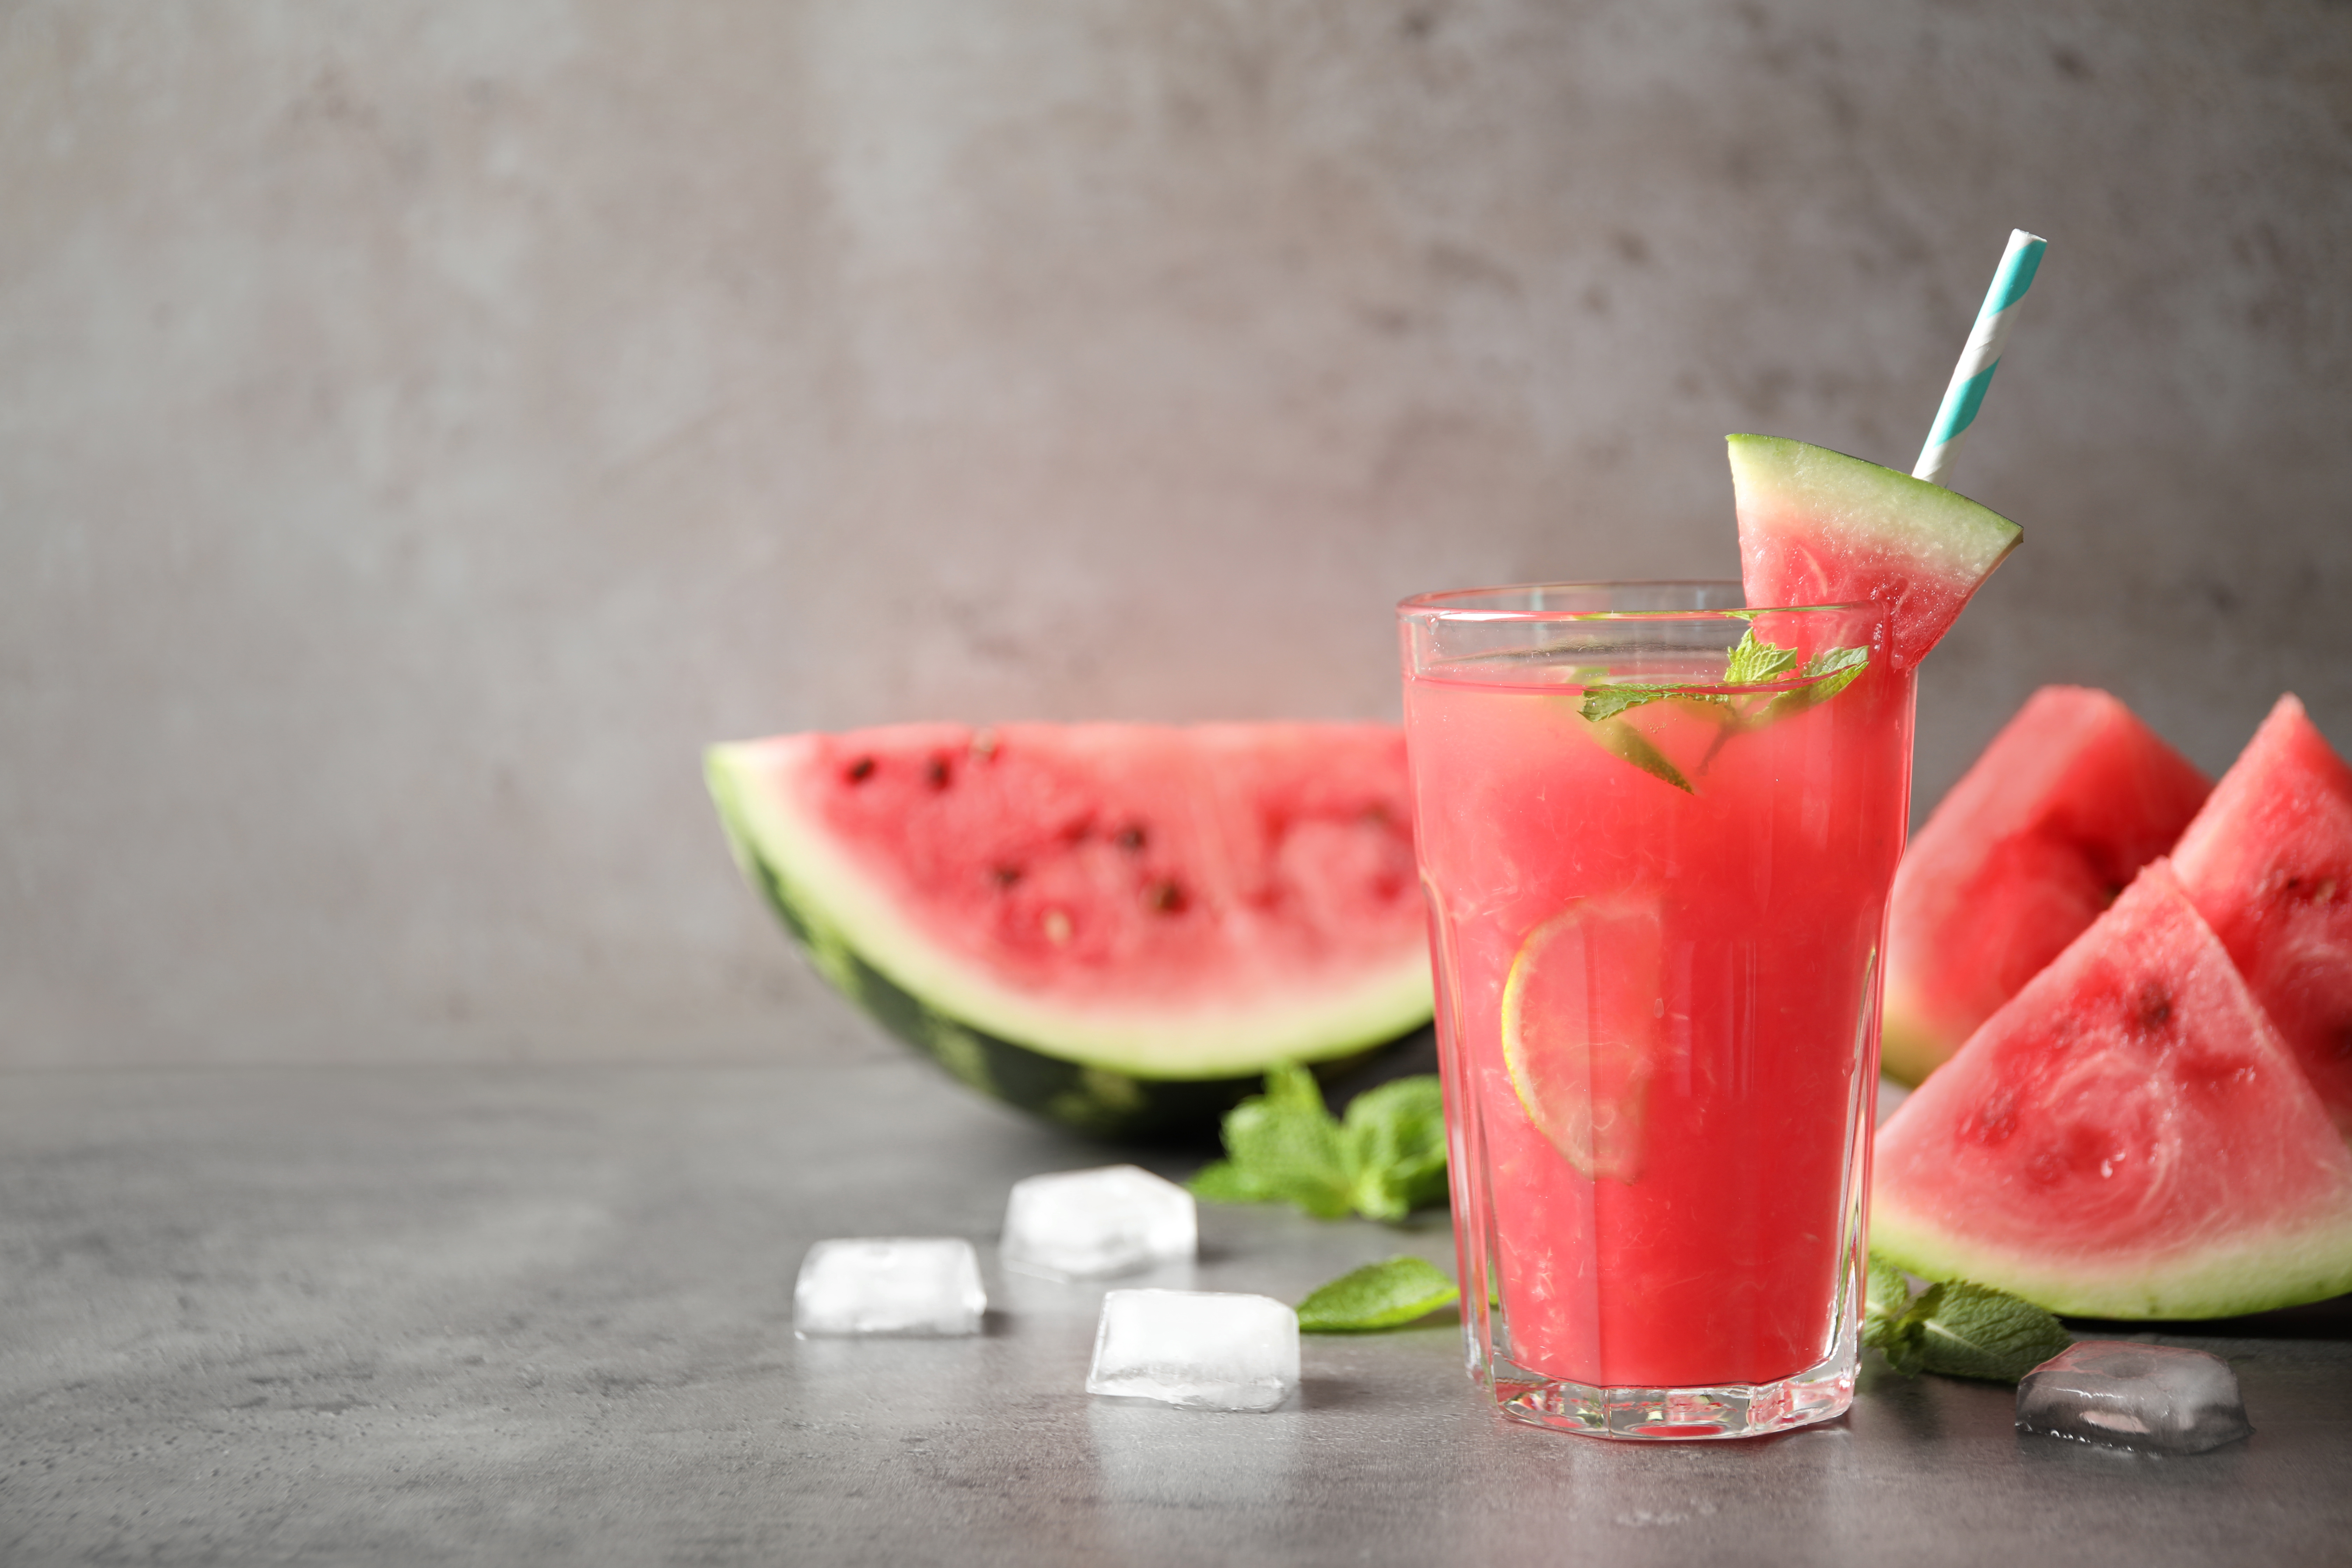 Les meilleurs aliments et boissons pour rester hydraté pendant l'été © New Africa, Adobe Stock